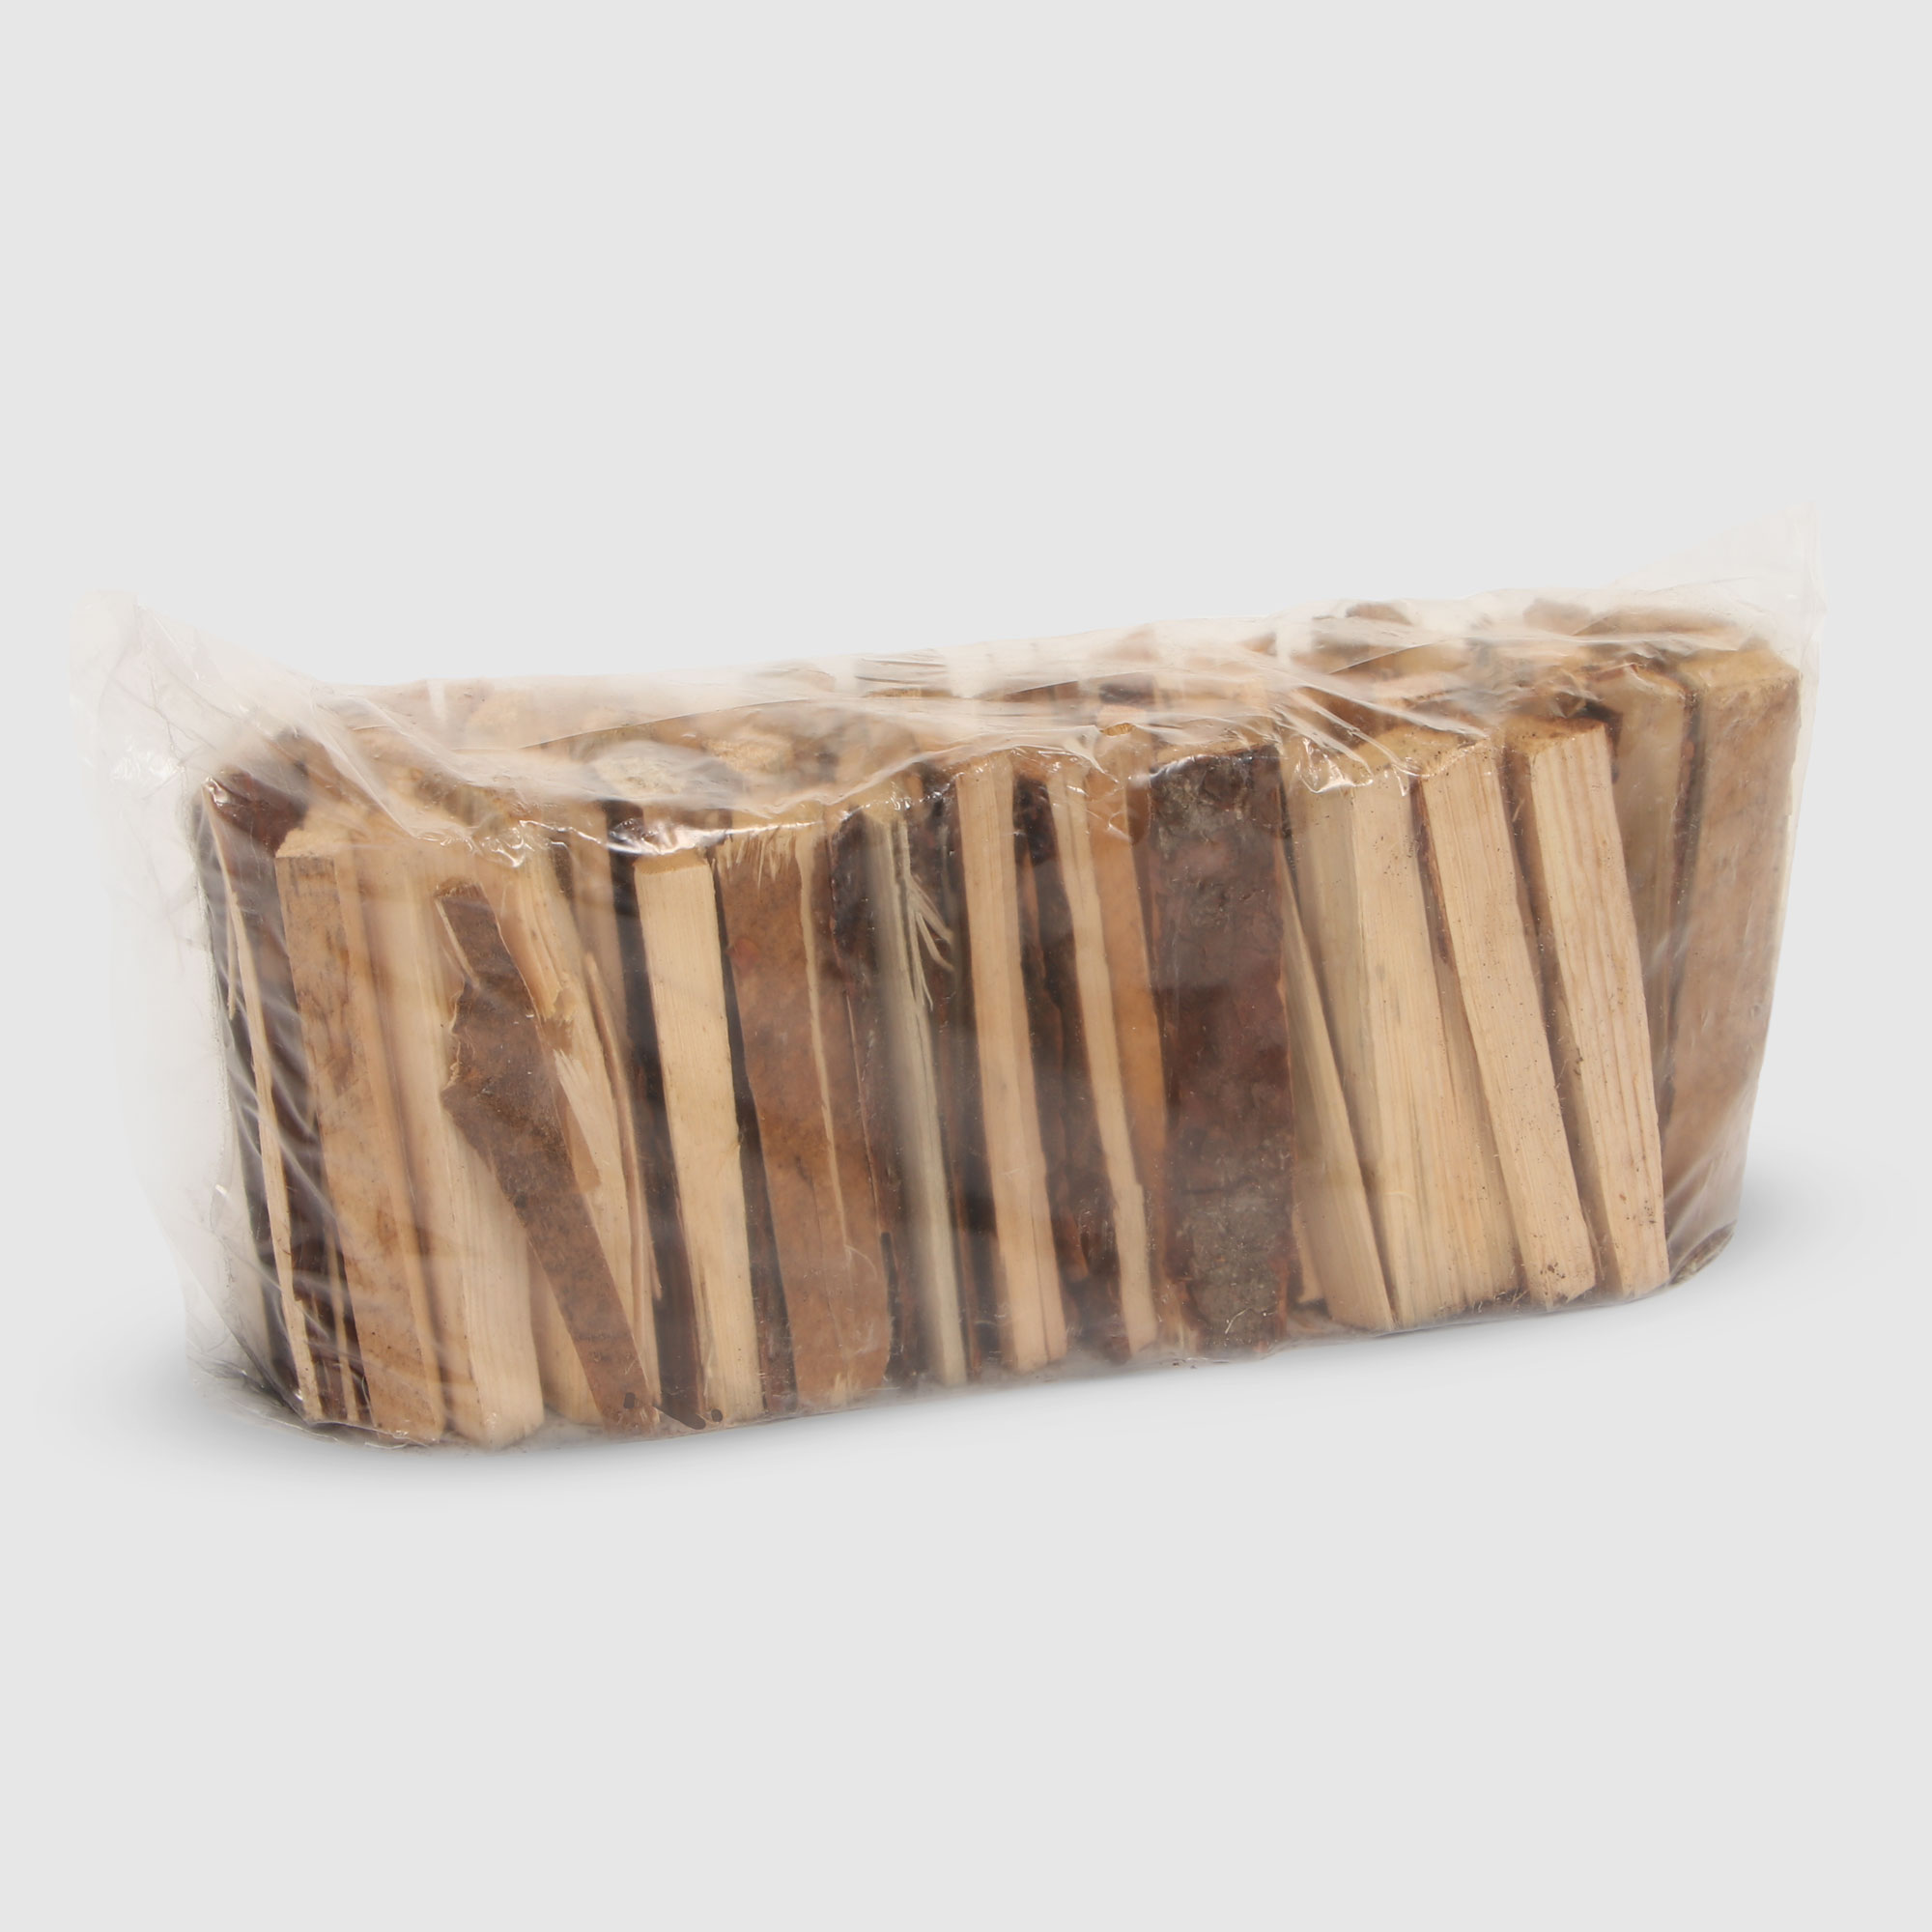 Лучина для растопки из хвойных пород 3 кг. дрова союзгриль камерной сушки фасованные береза 6 кг